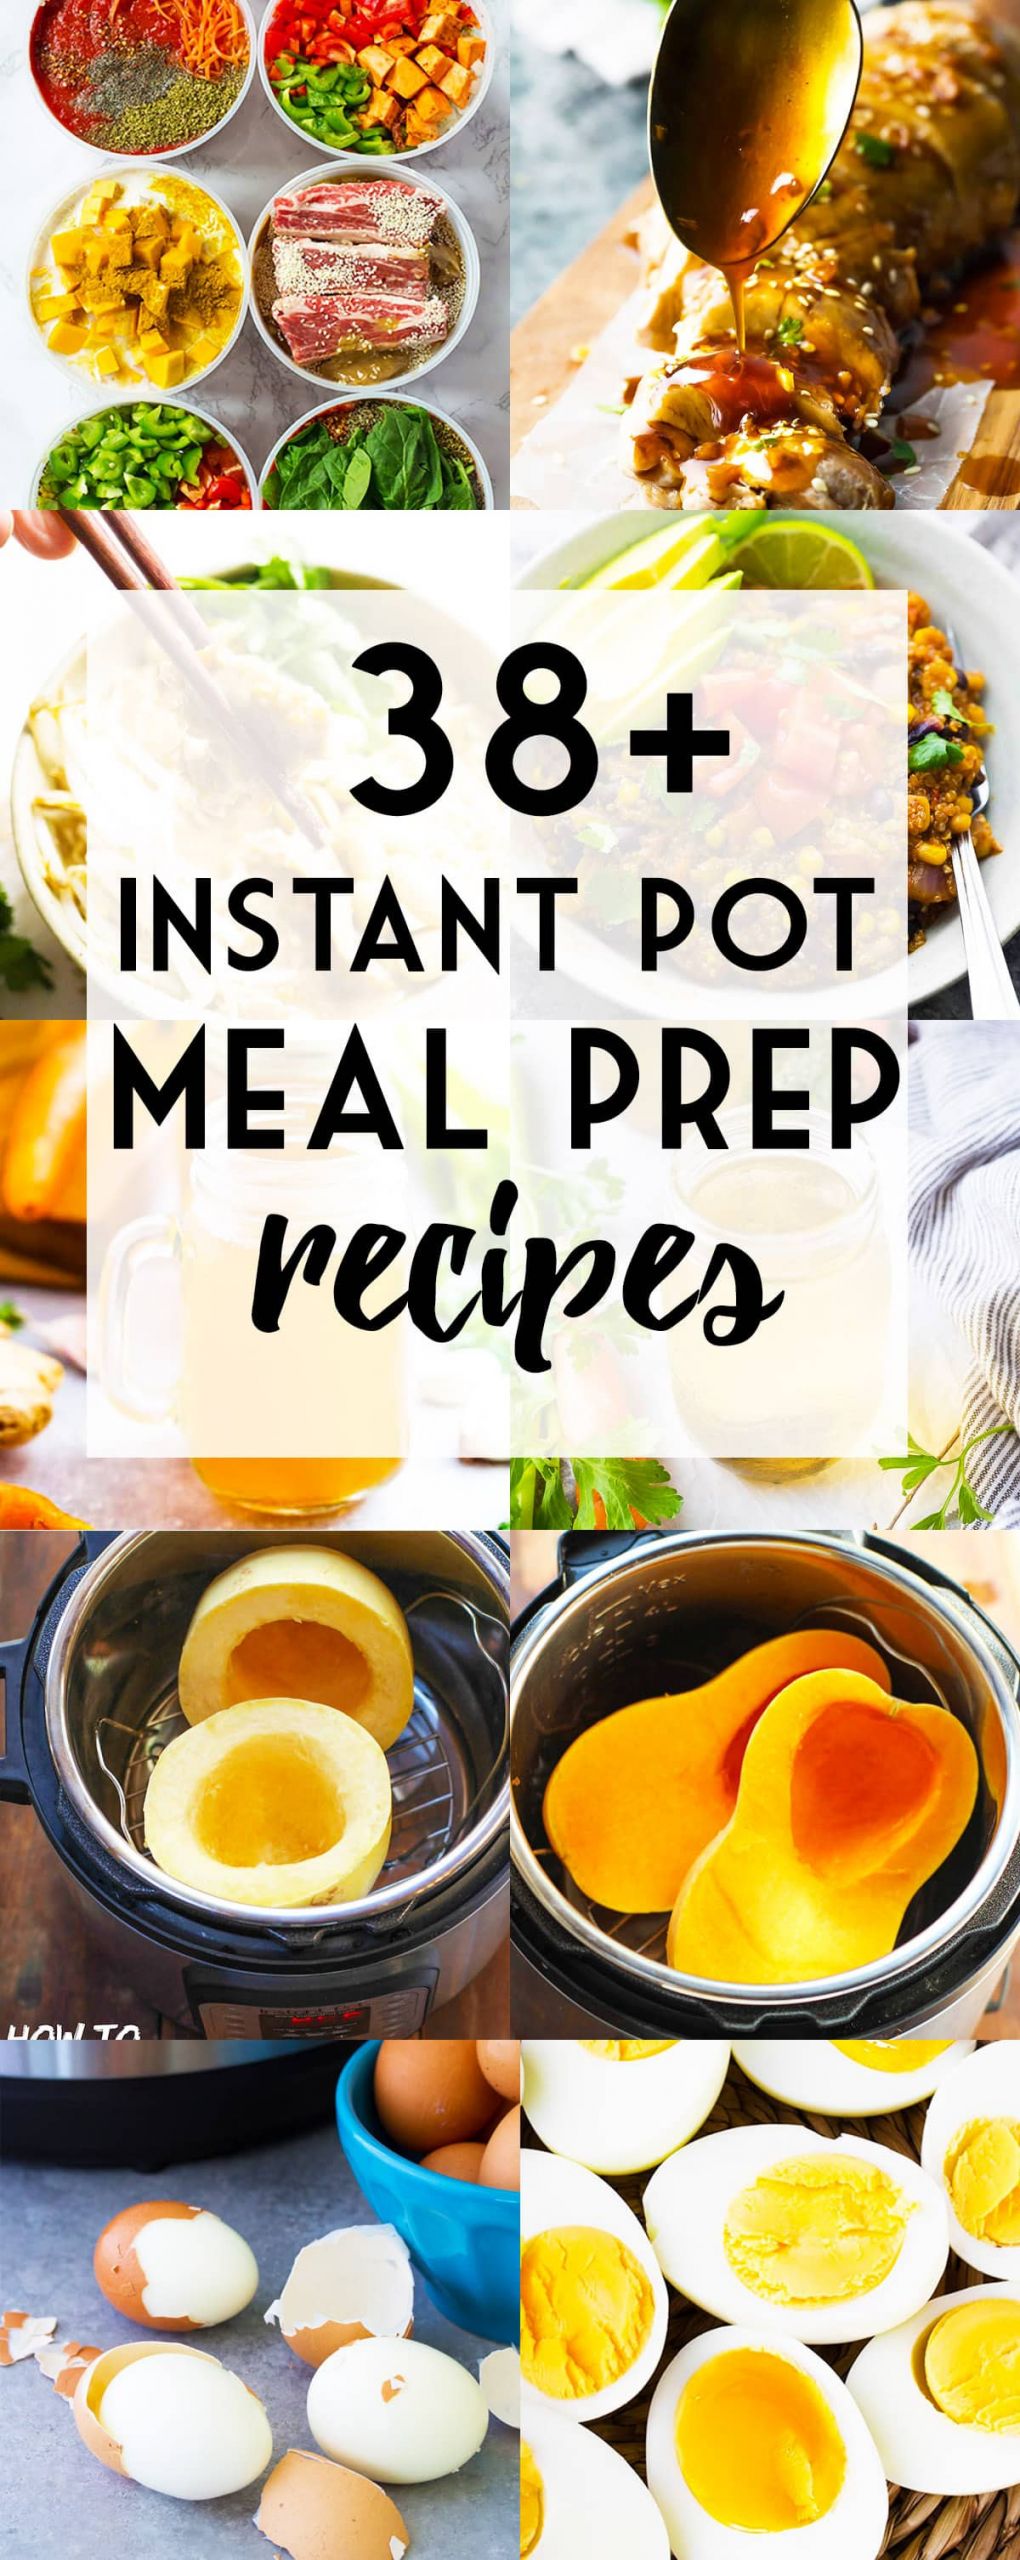 Instant Pot Meal Prep Recipes
 38 Instant Pot Meal Prep Recipes